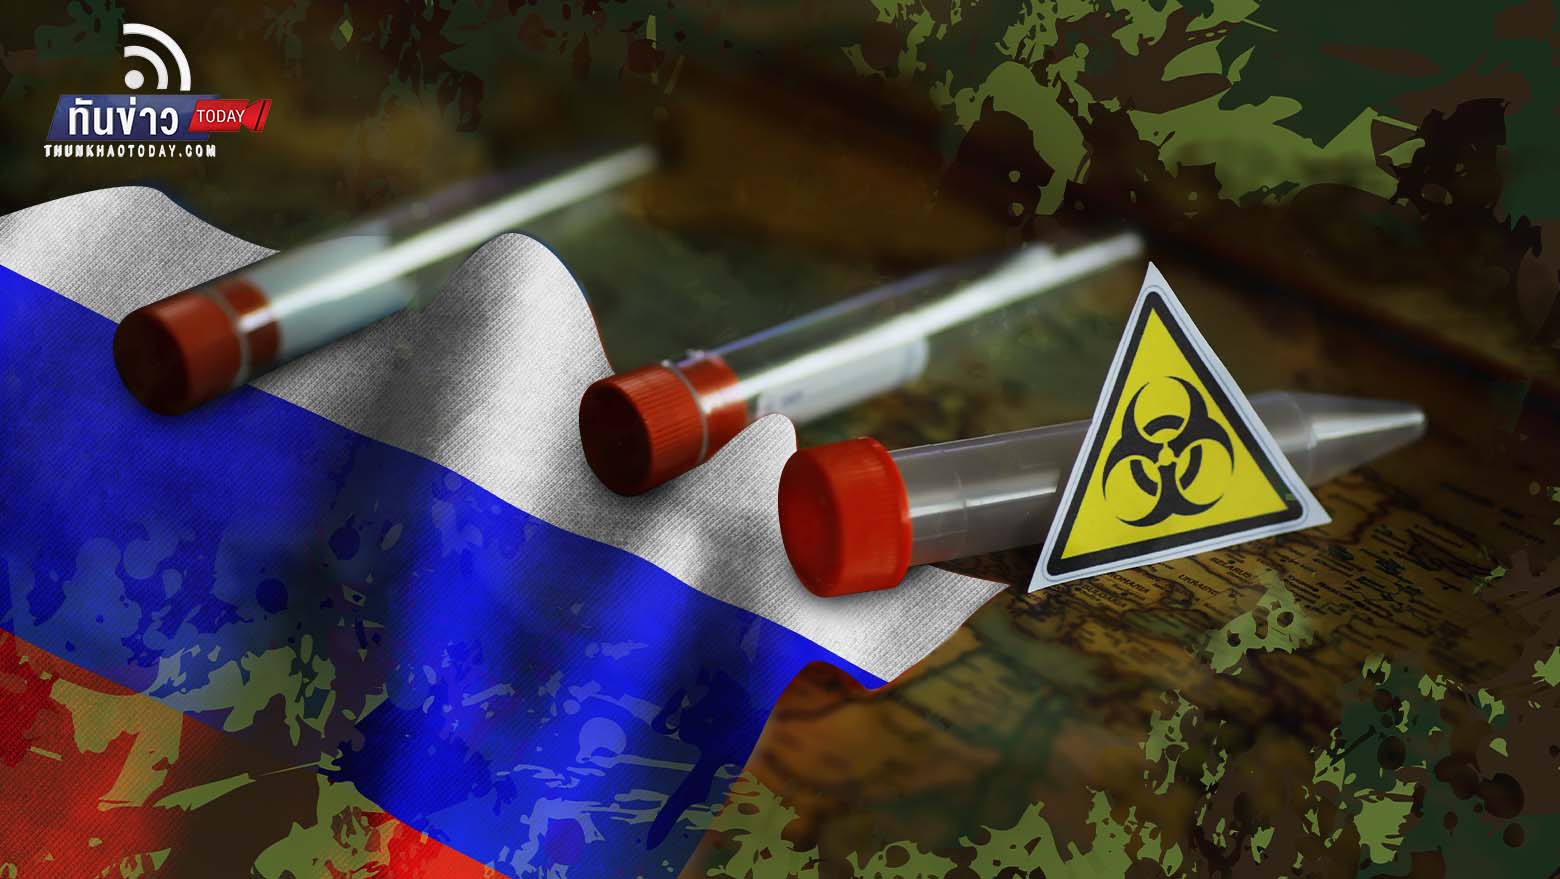 “สหรัฐฯ กังวลรัสเซียซุ่มผลิตอาวุธชีวภาพทำลายล้างยูเครน